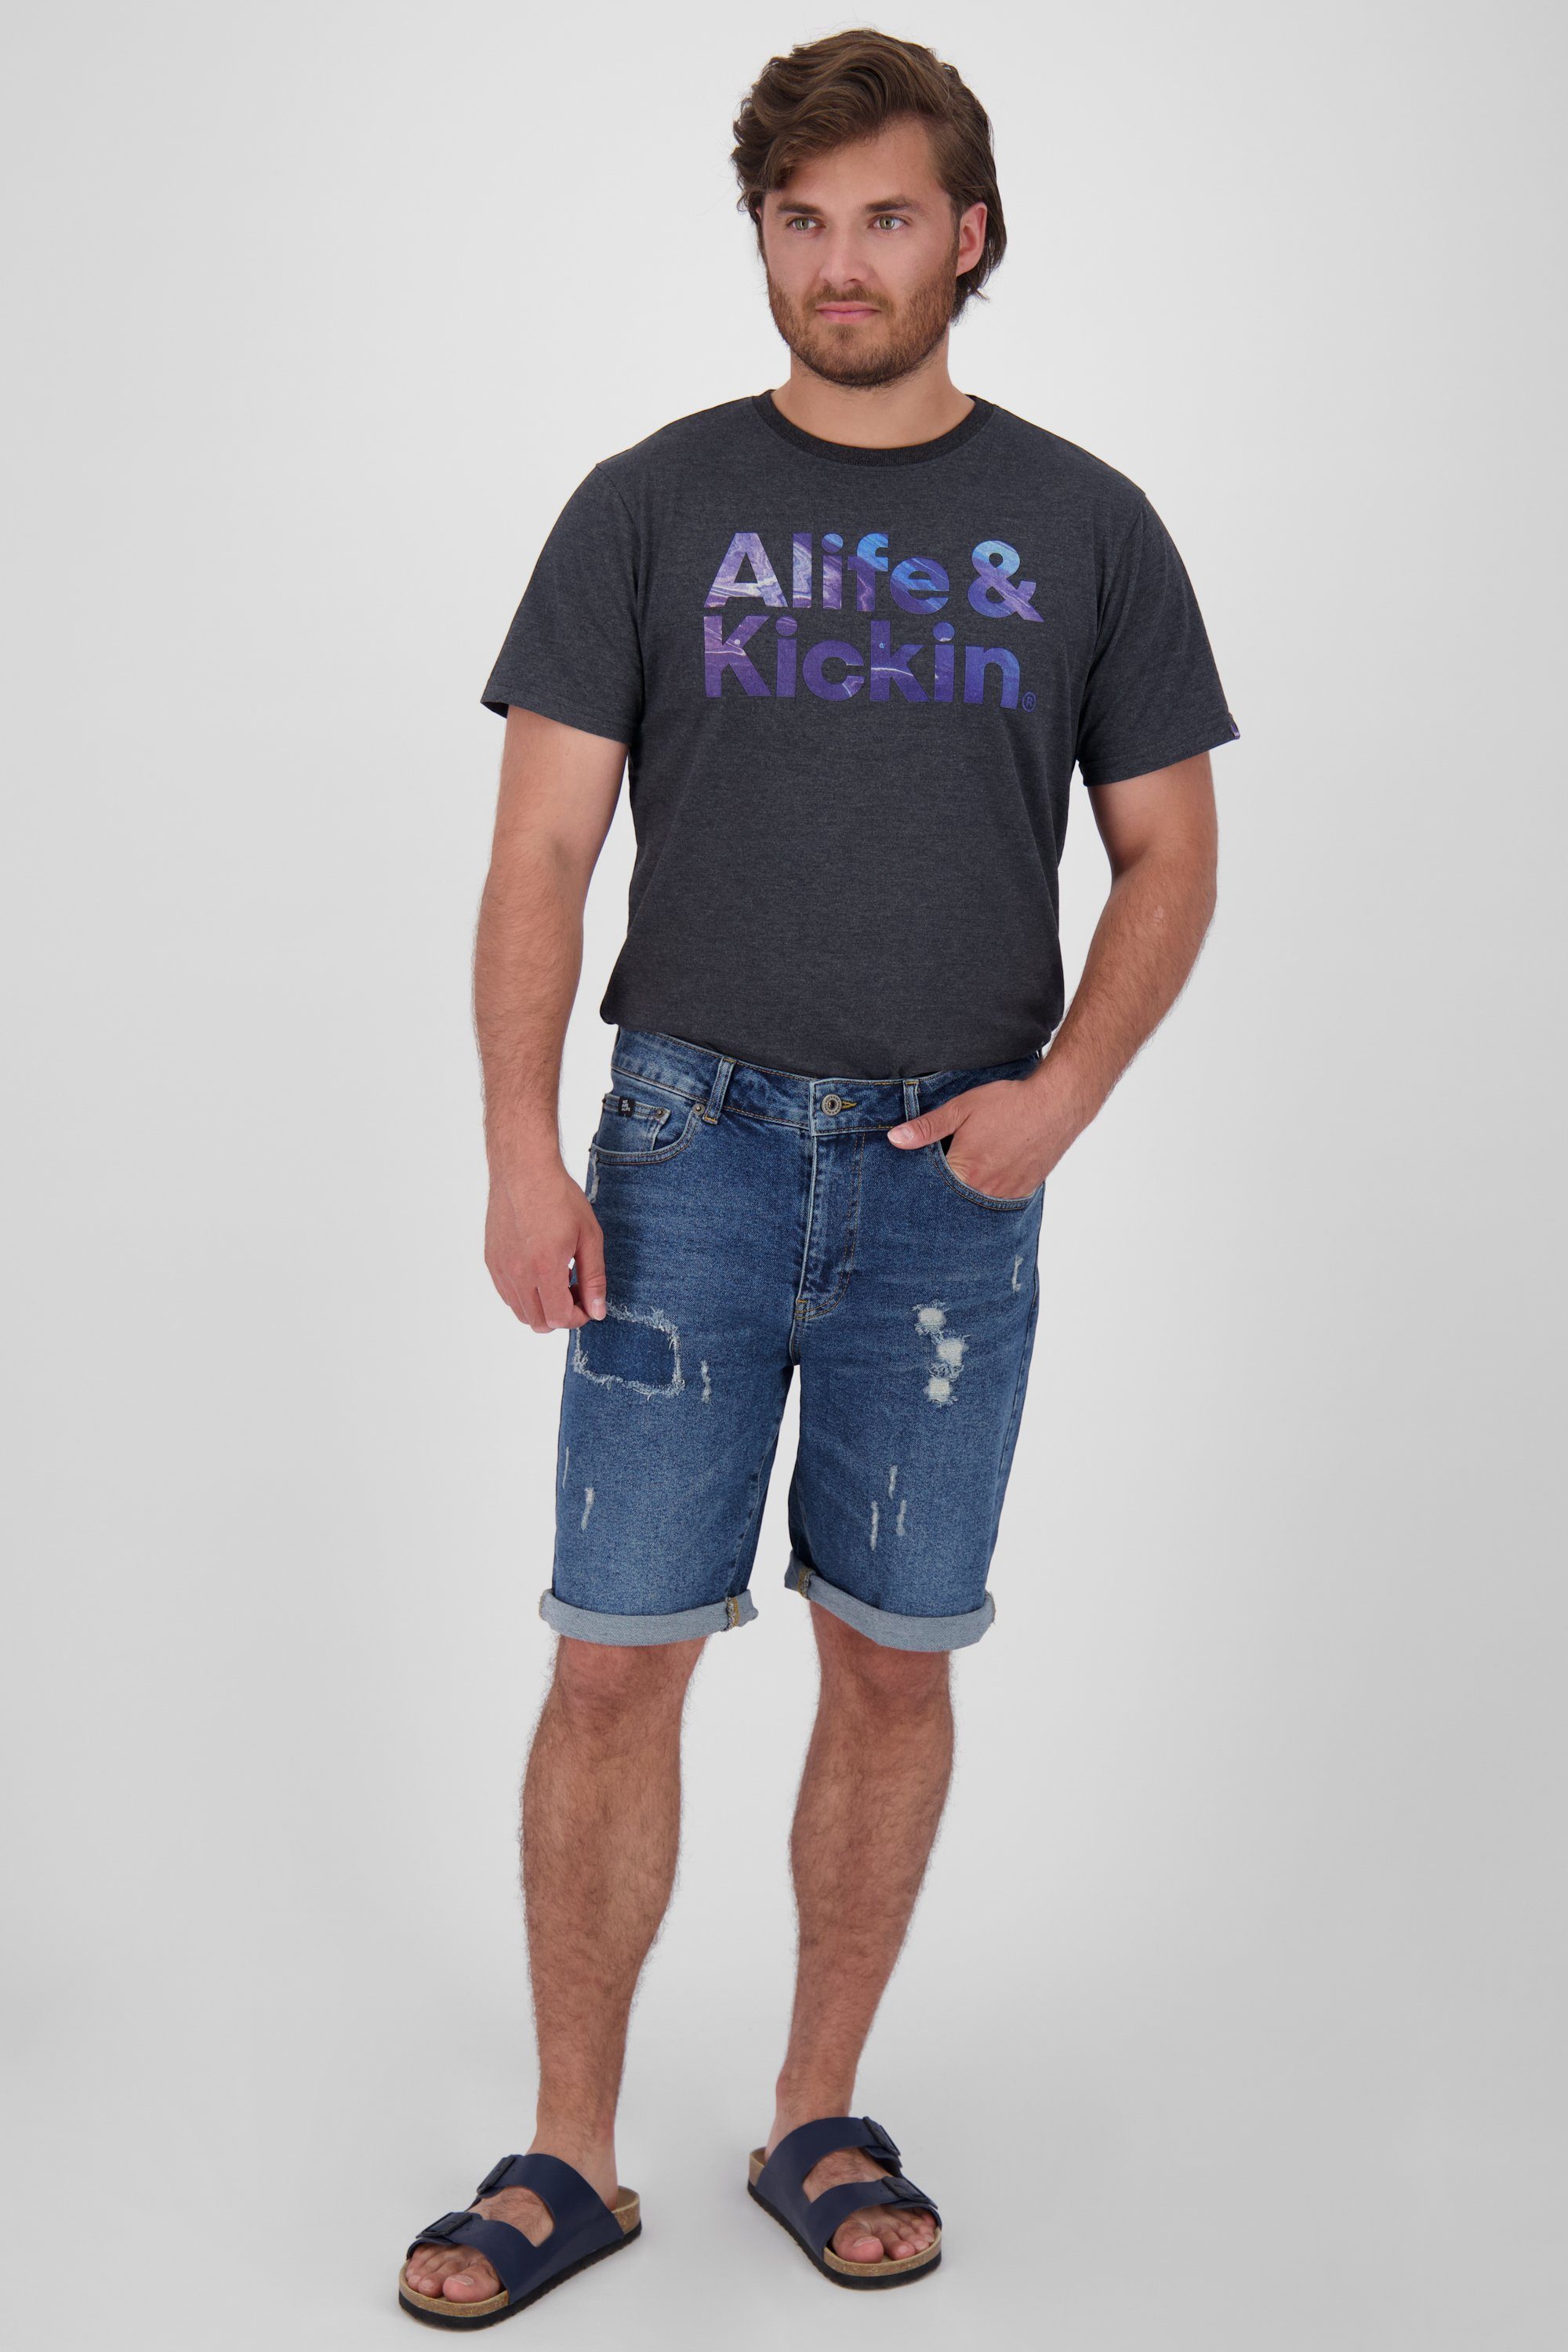 Alife & washed denim Kickin A MorganAK Herren Shorts kurze Jeansshorts, Shorts DNM Hose dark